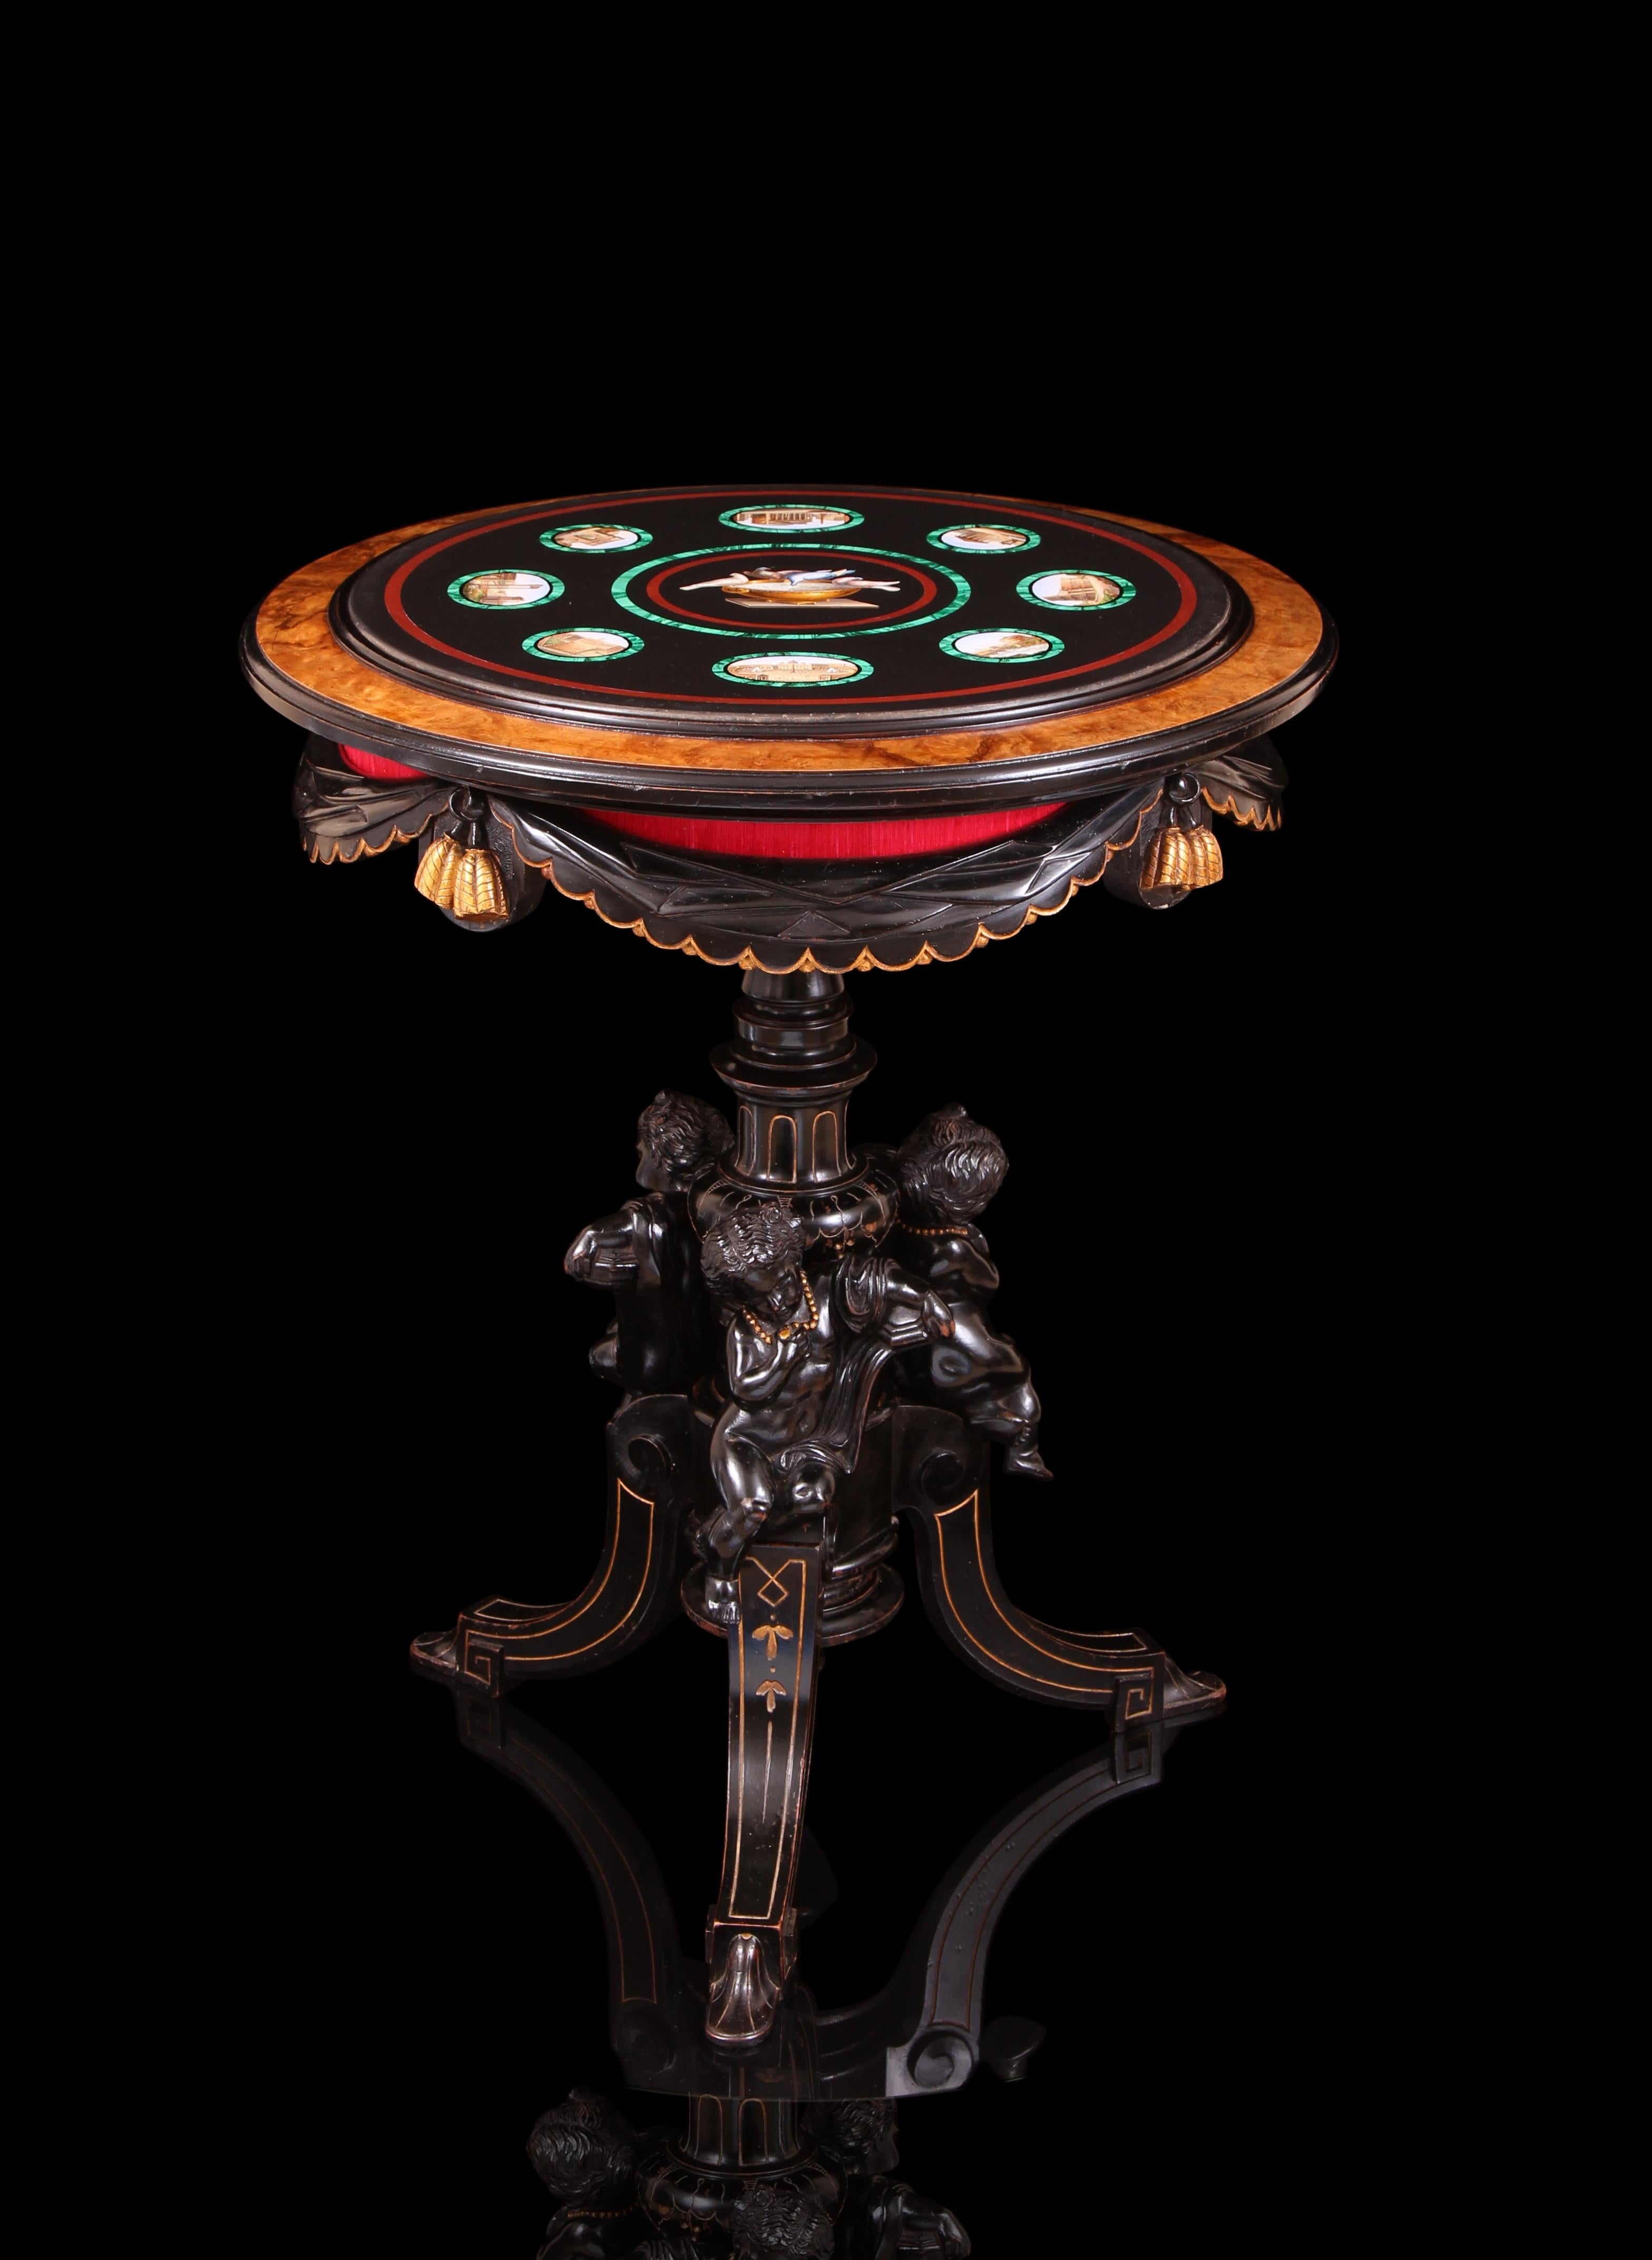 Importante et rare table italienne du 19ème siècle en micromosaïque, bronze et bois doré au parchemin. Chef-d'œuvre de conception exquise, la base au thème romantique et opératique et le sommet éblouissant sont complètement originaux l'un par